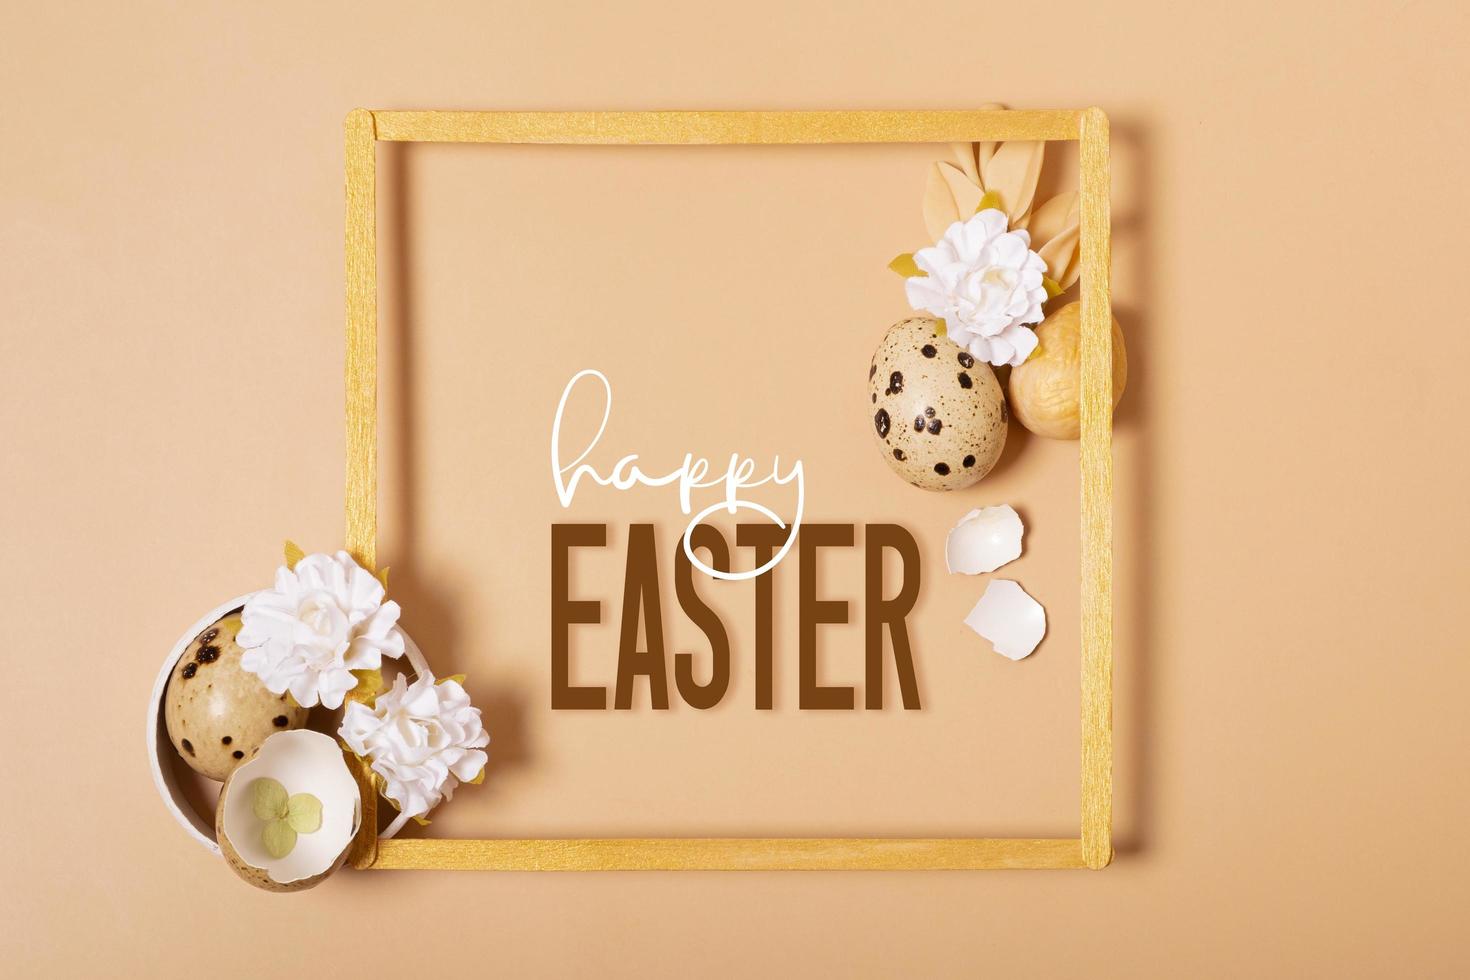 marco con contento Pascua de Resurrección texto y huevos composición decorado con leña menuda y flores Pascua de Resurrección saludo tarjeta foto